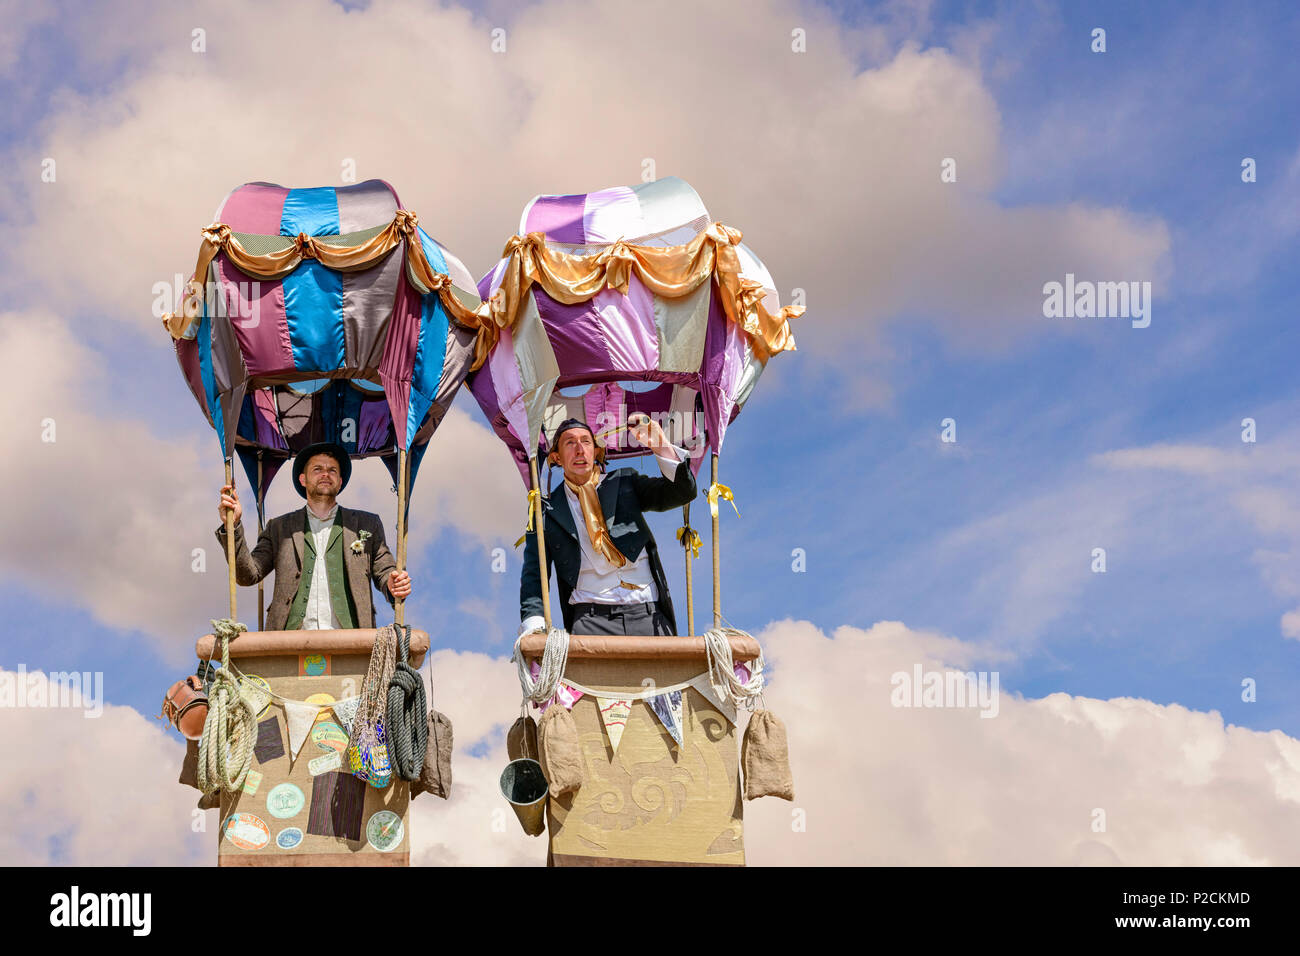 Deux entertaines la rue dans une simulation de montgolfières Banque D'Images